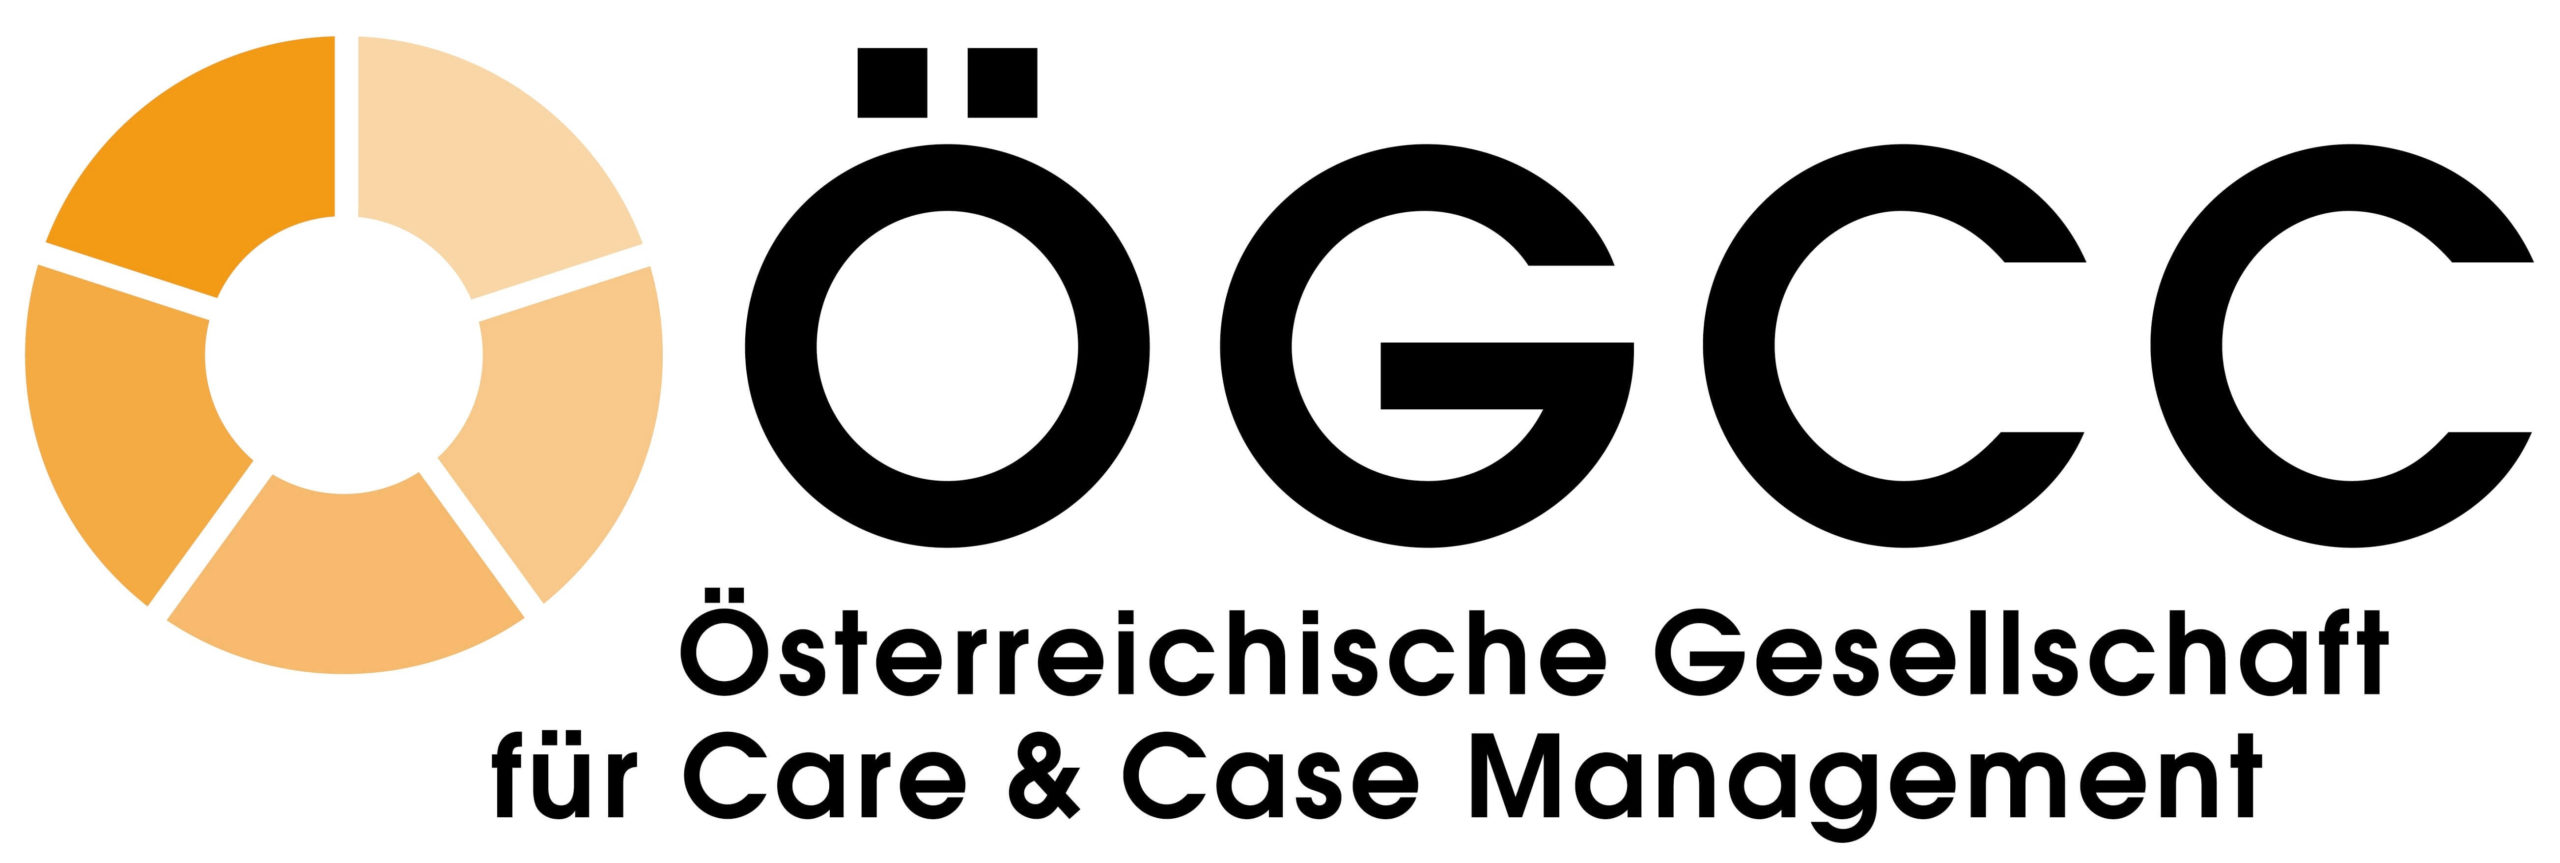 OEGCC Logo 4c 2